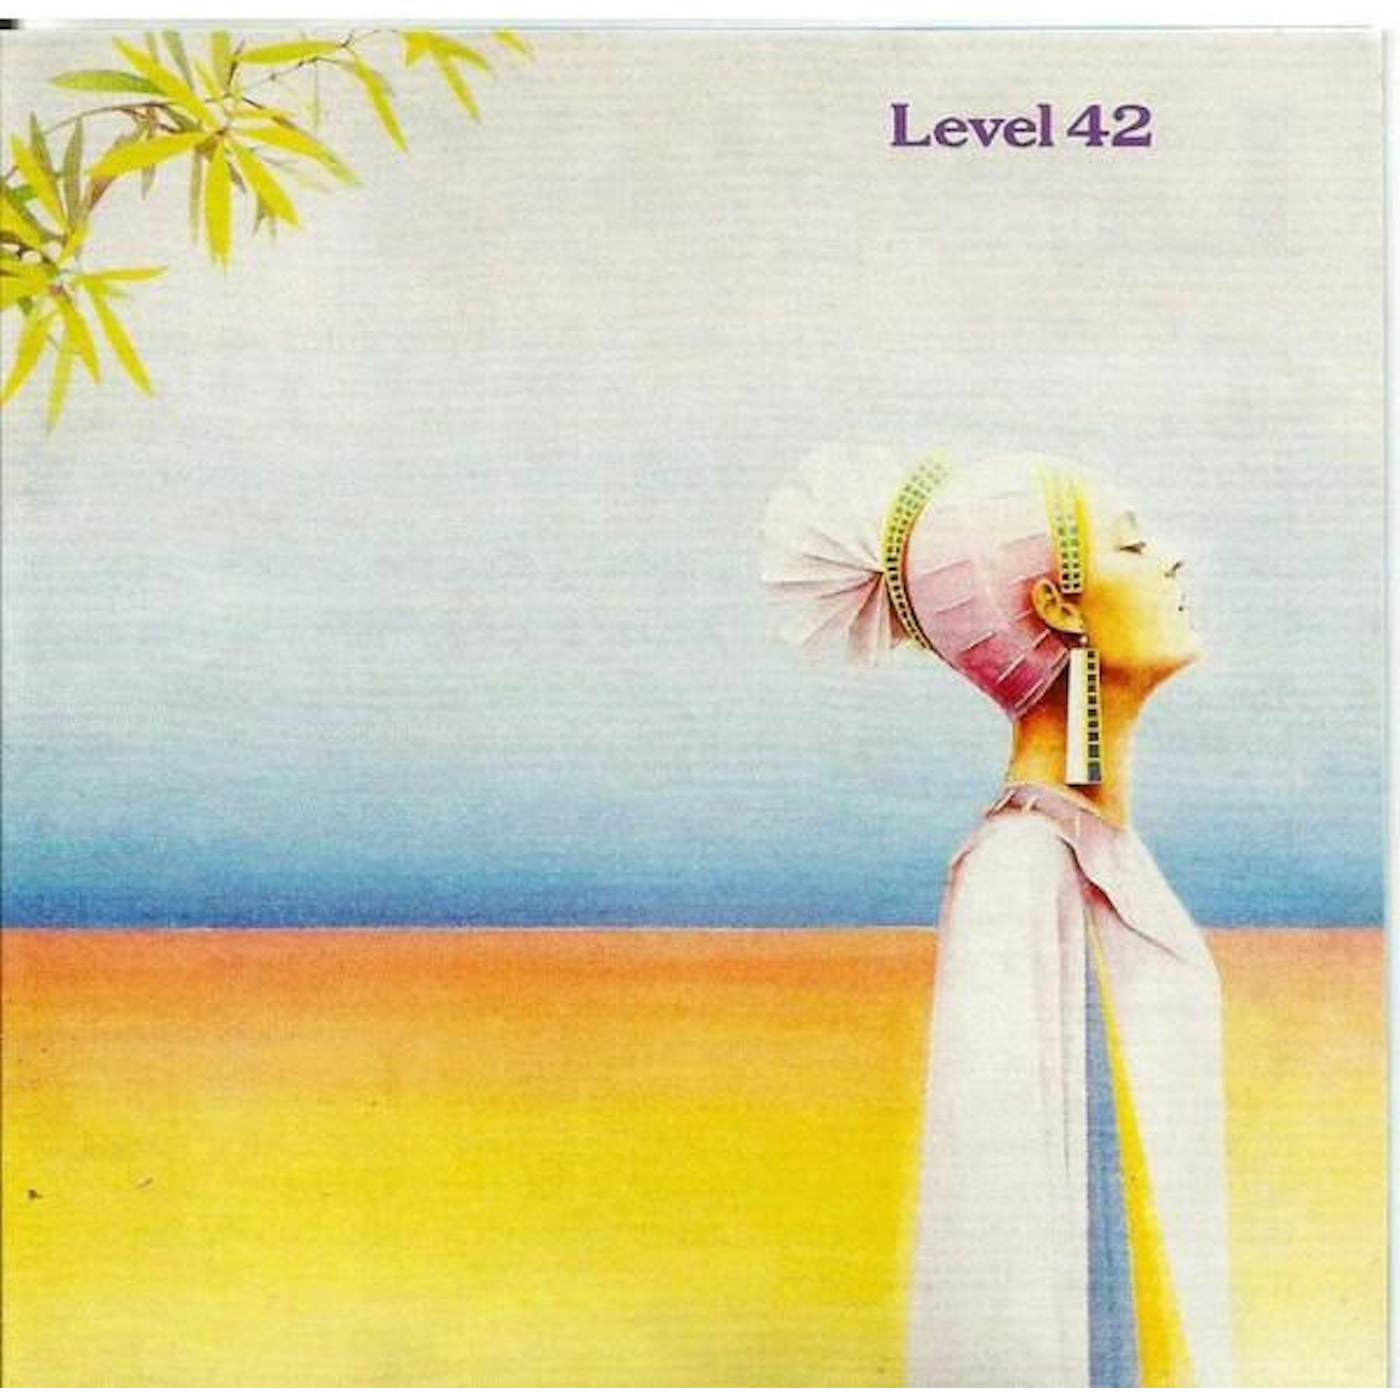 LEVEL 42 Vinyl Record